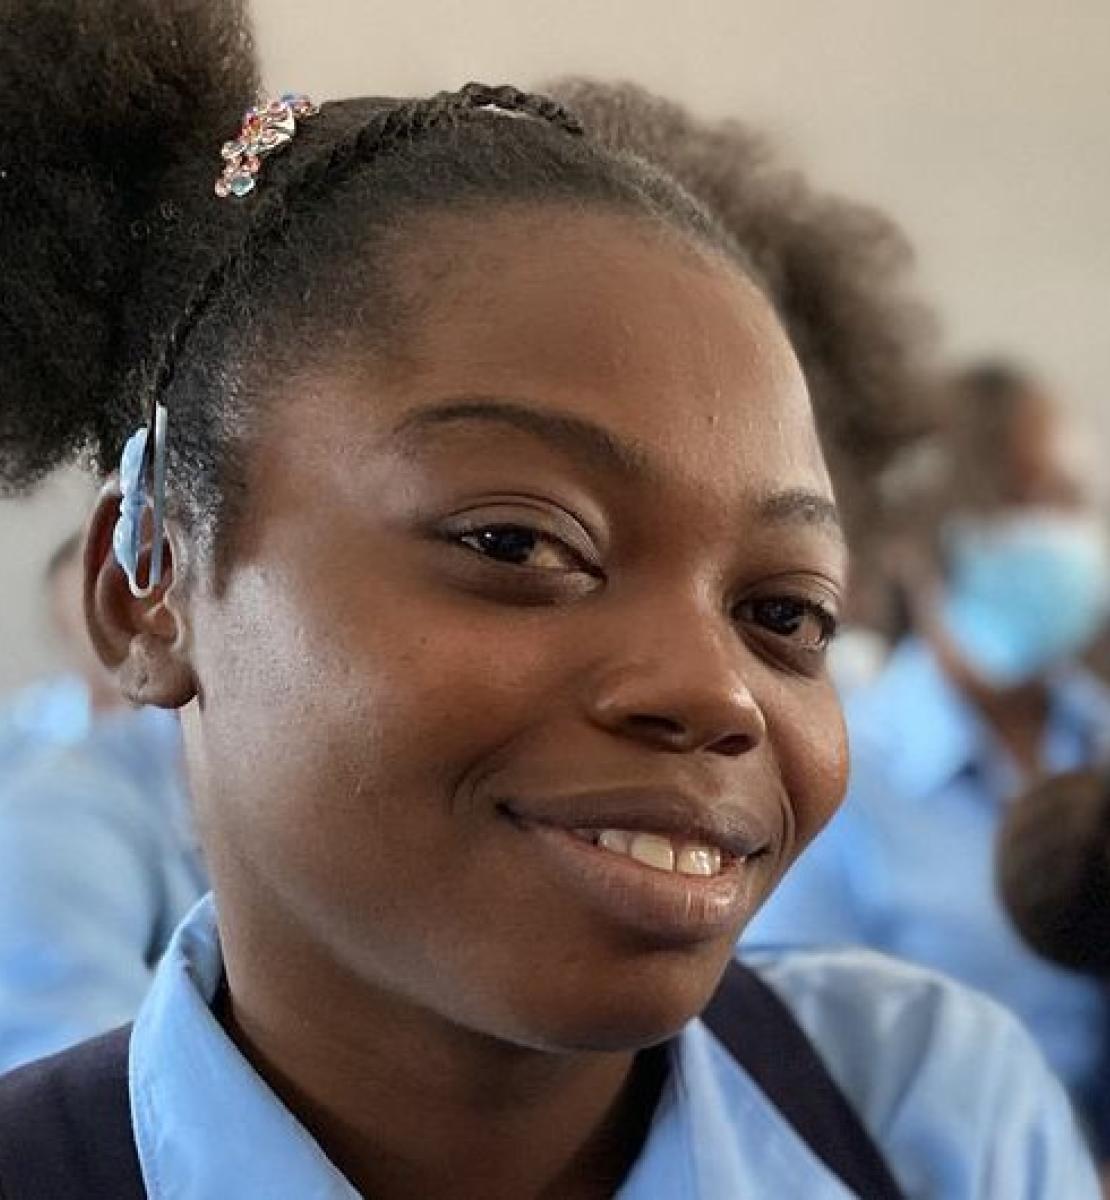 Una niña con su uniforme escolar sonríe a la cámara mientras el resto de los estudiantes miran hacia el centro del aula.